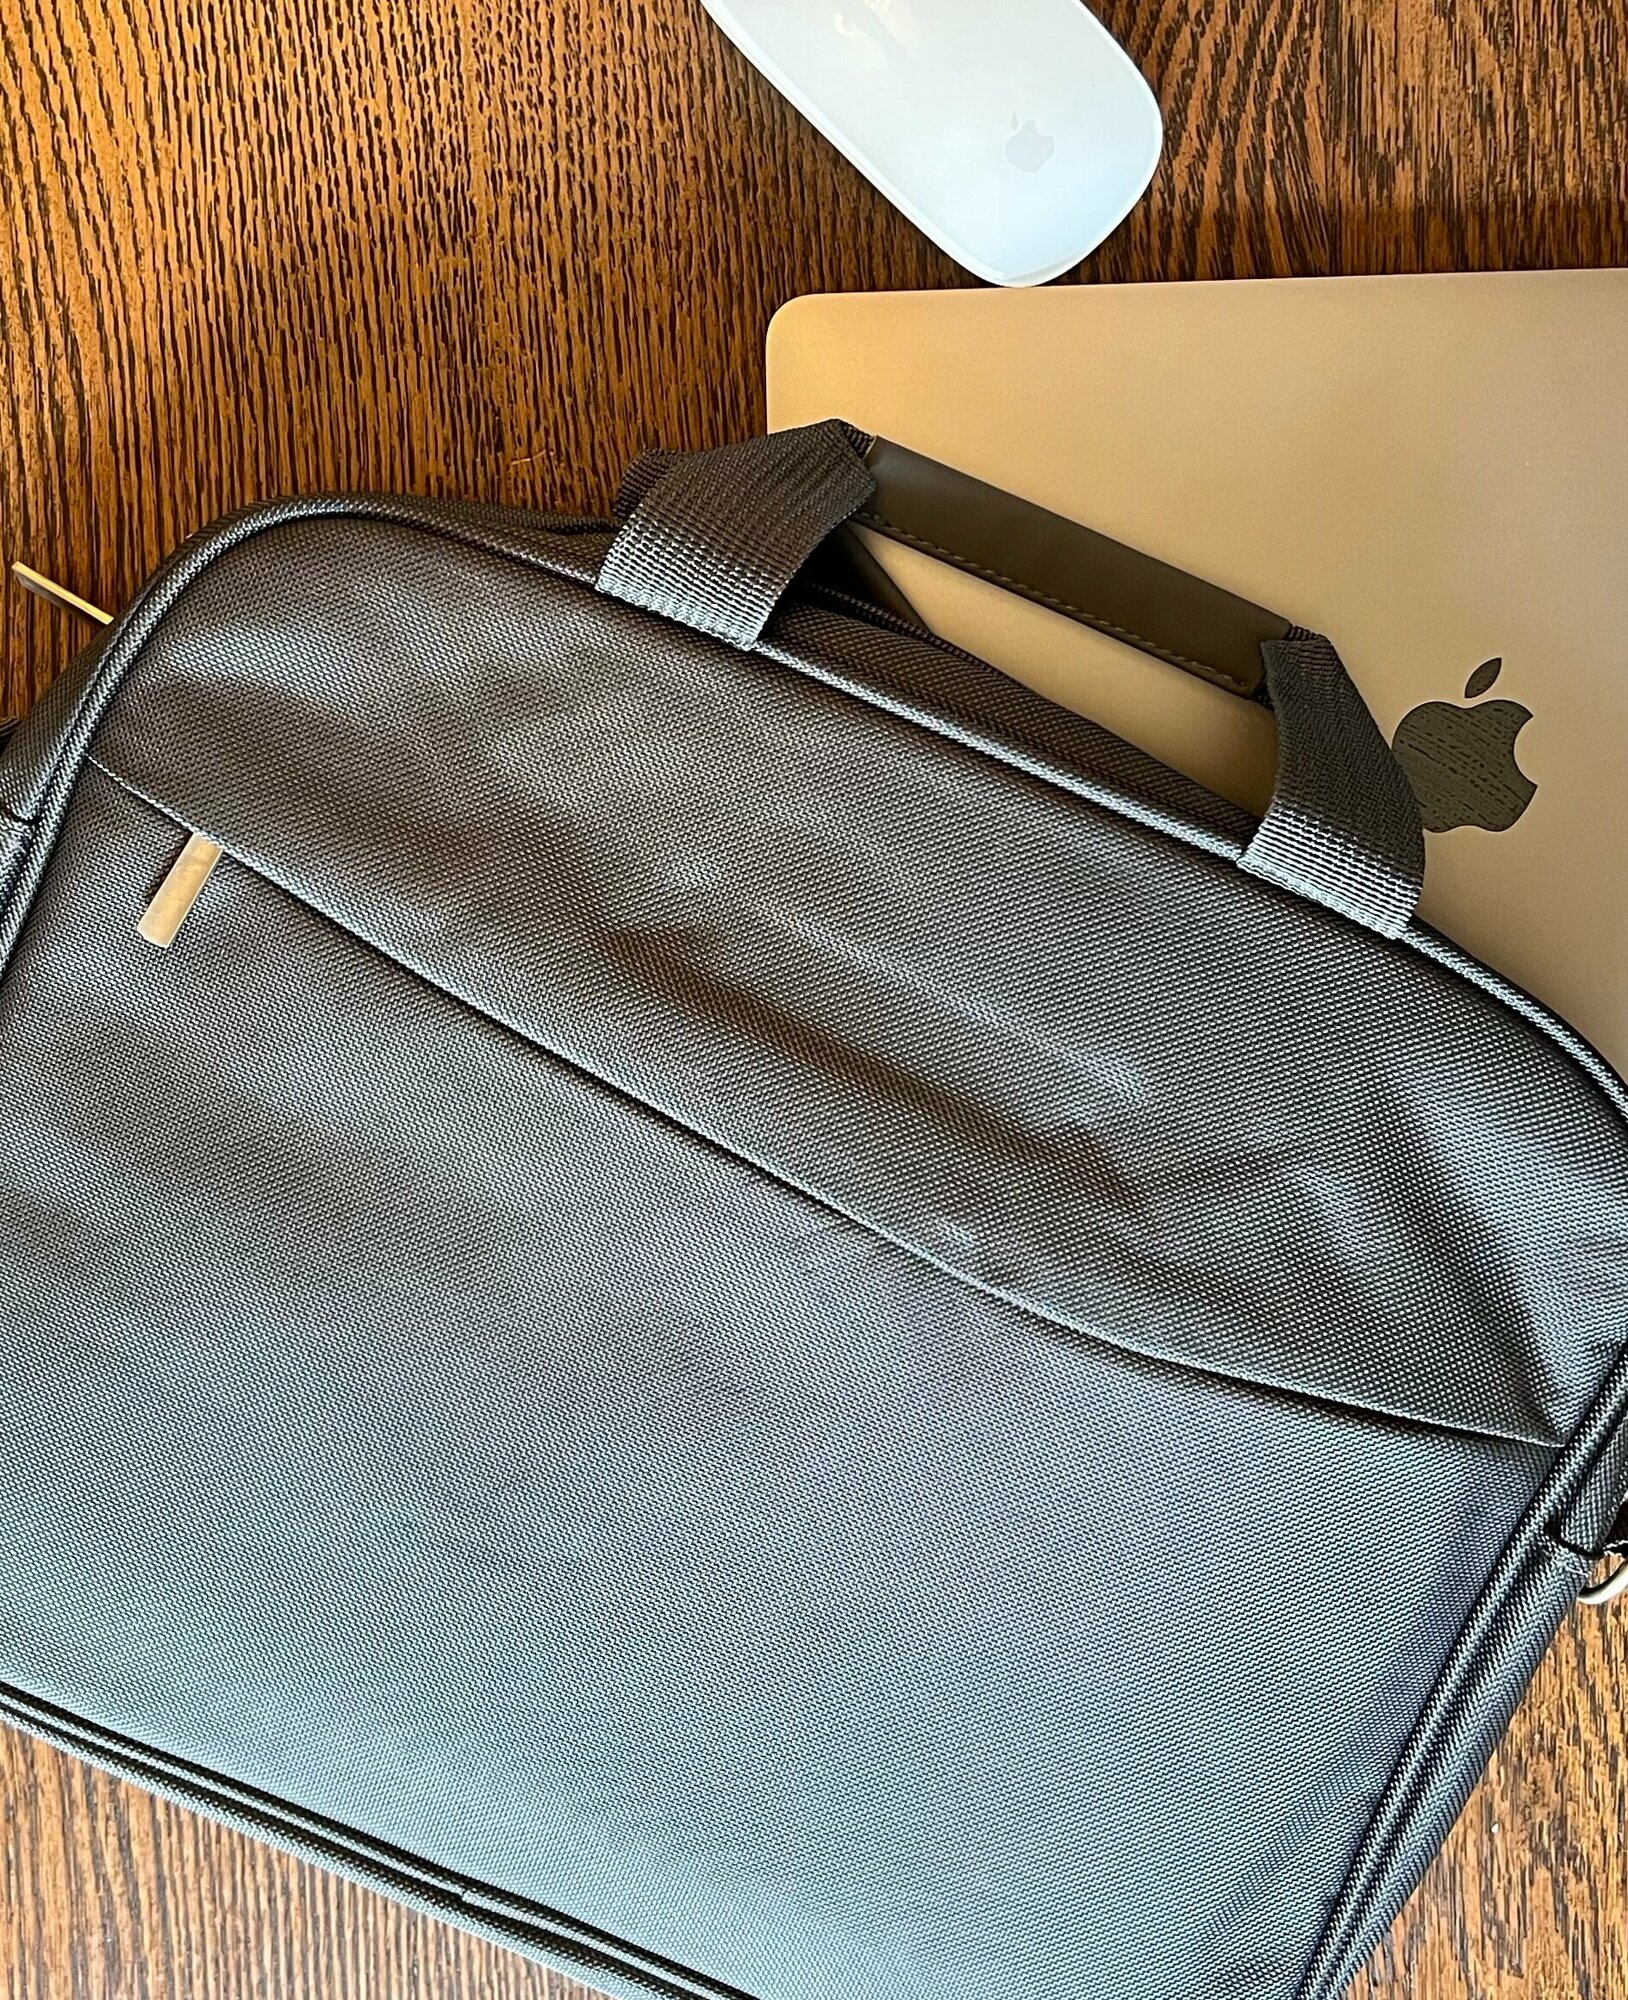 Сумка для ноутбука, макбука (Macbook) 13-15 дюймов с ремнем мужская, женская / Деловая сумка через плечо, размер 38-28-5 см, серый